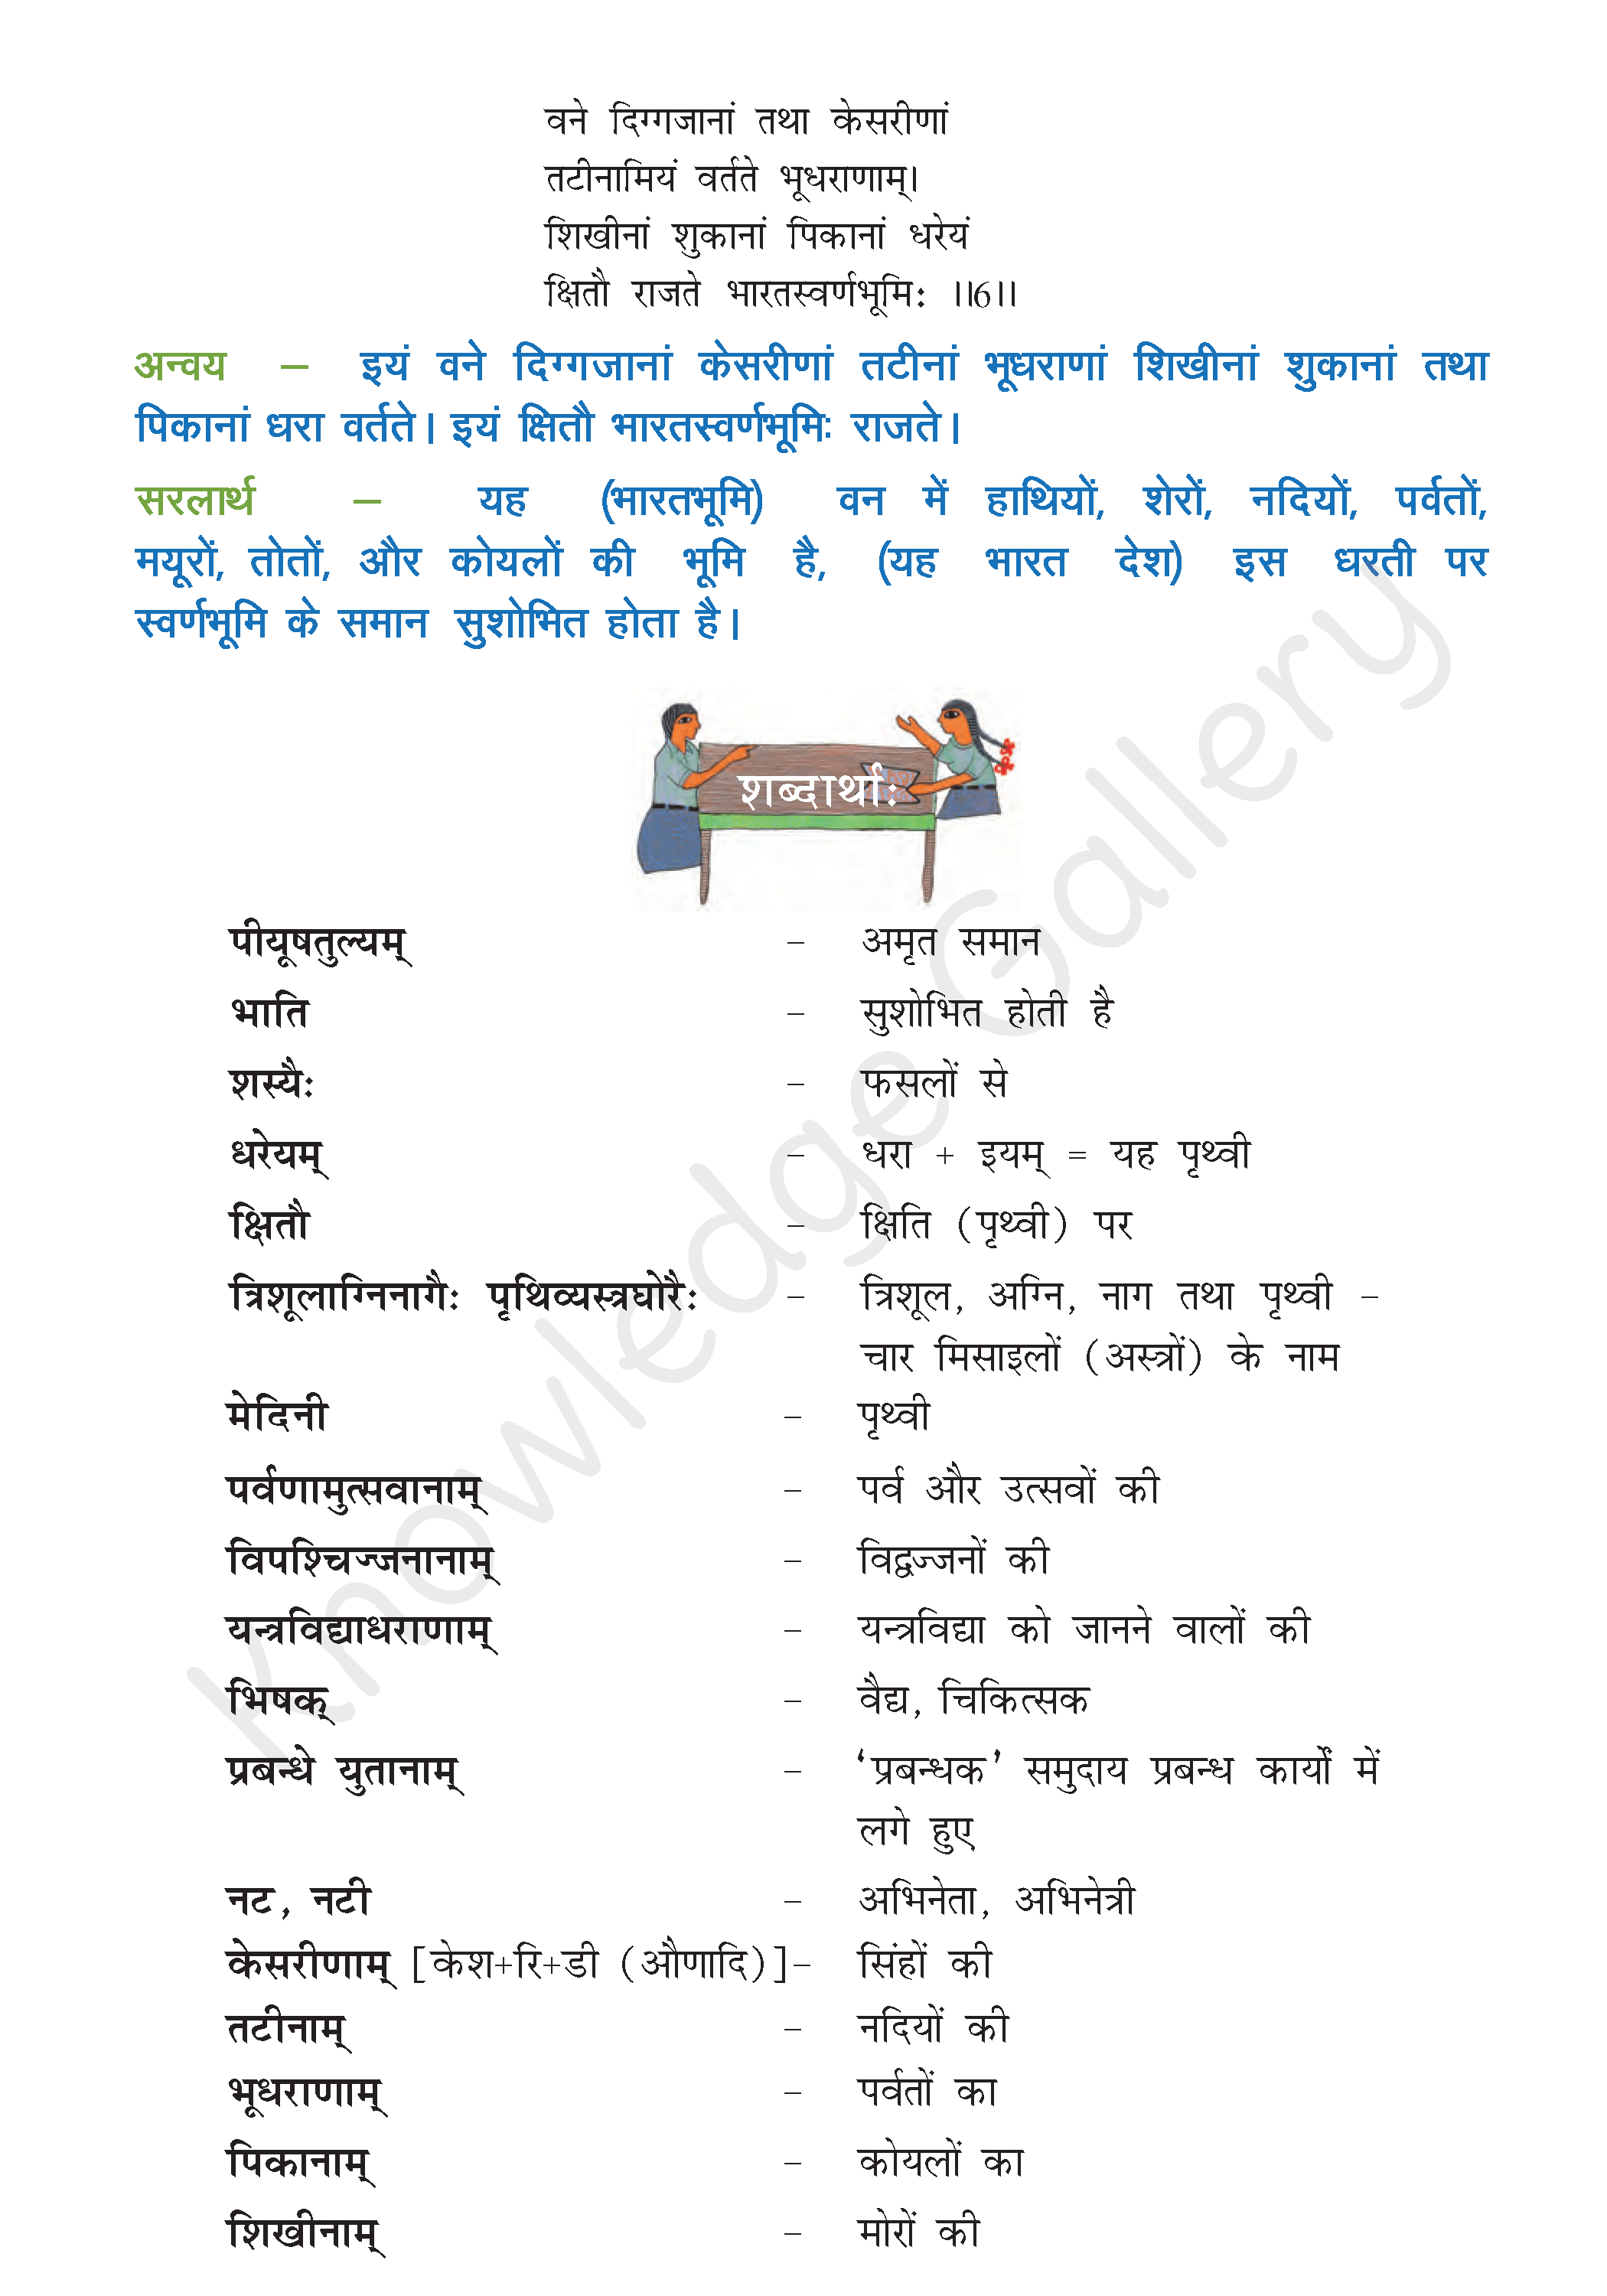 NCERT Solution For Class 8 Sanskrit Chapter 13 part 3